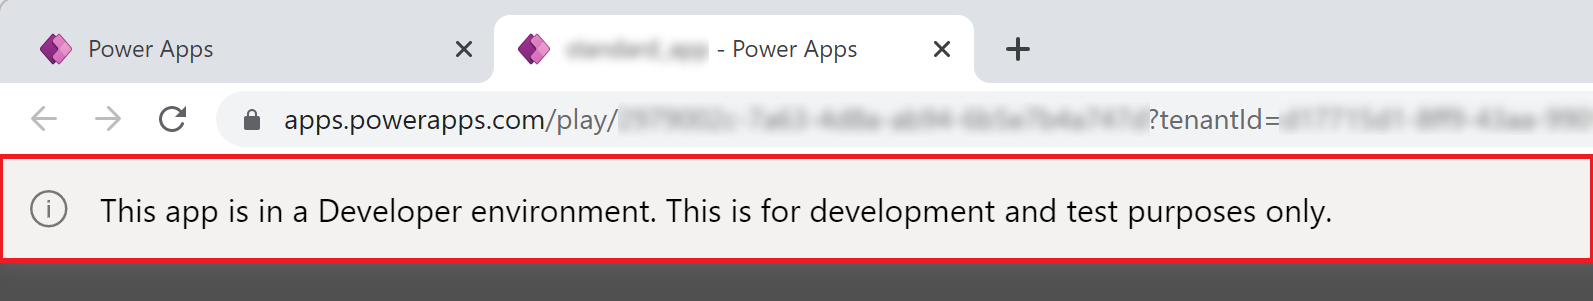 Power Apps Biểu ngữ môi trường nhà phát triển.